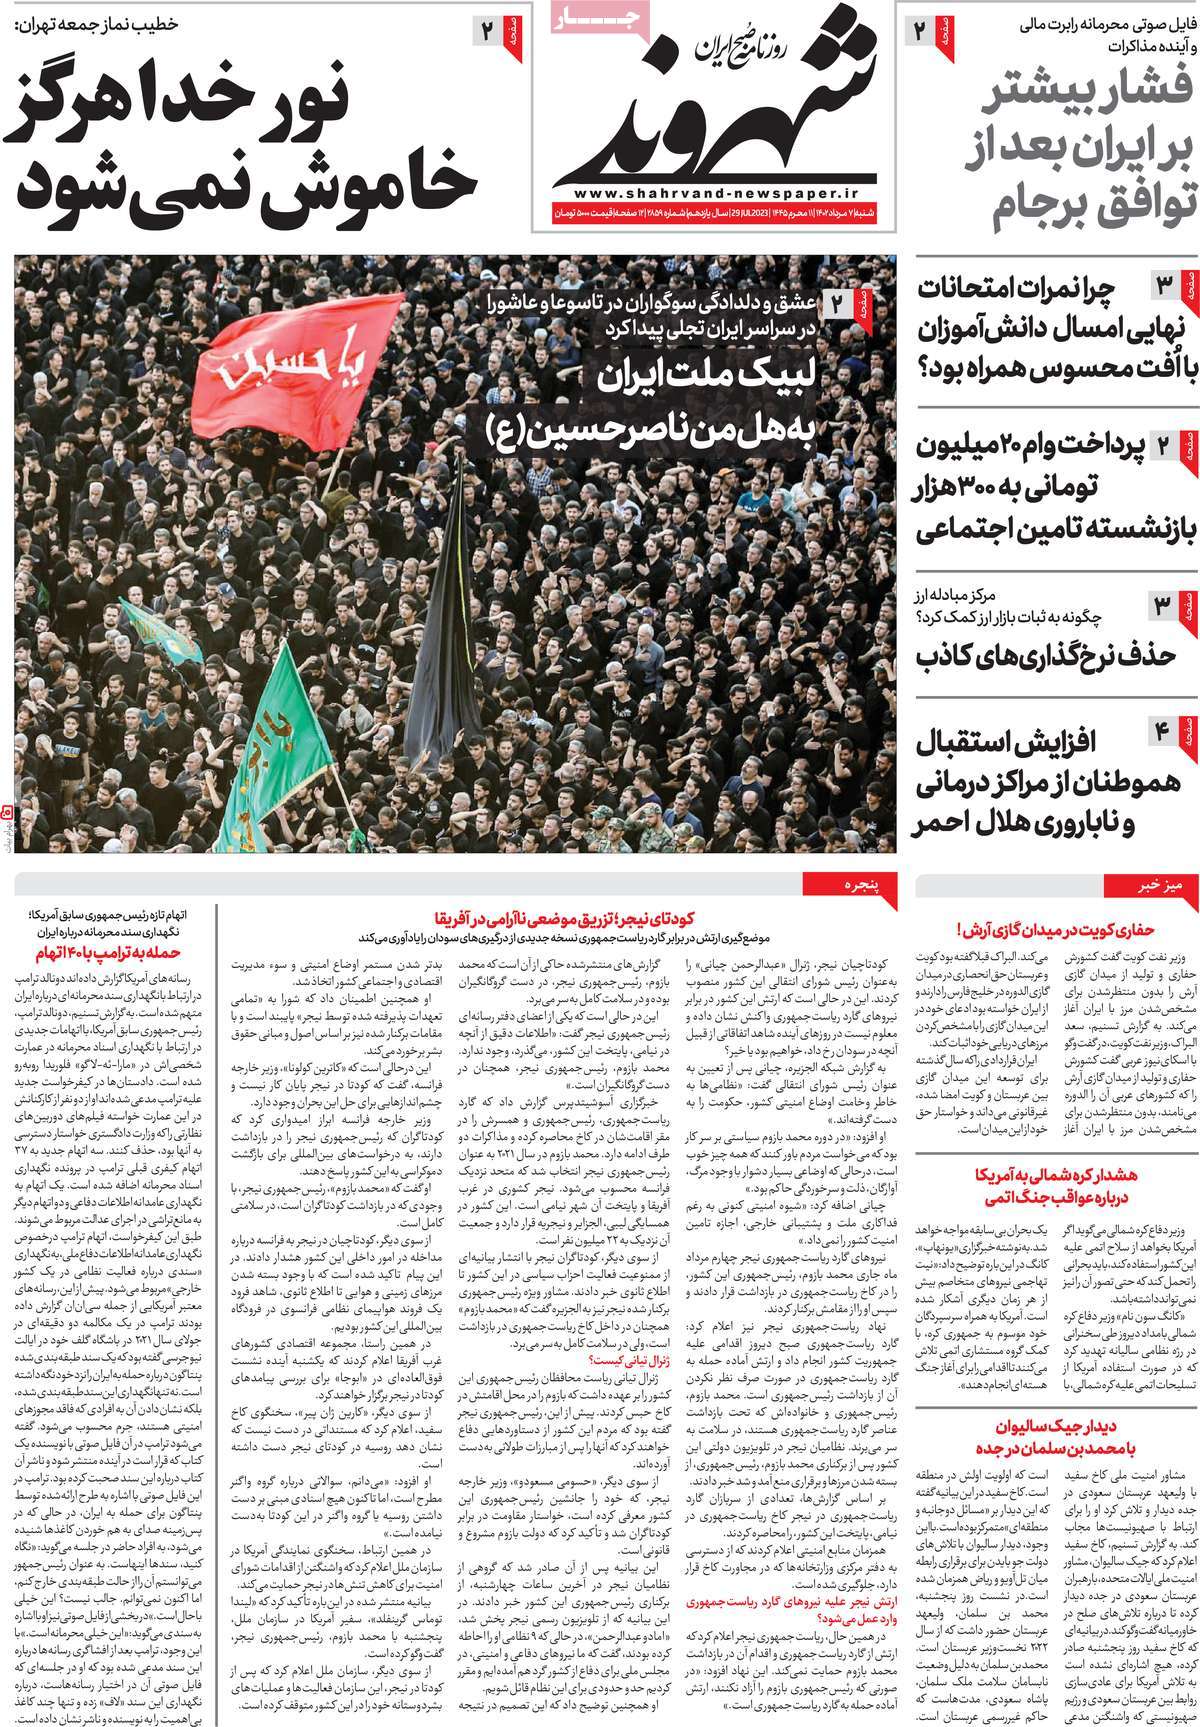 صفحه اول روزنامه های رسمی کشور / روزنامه شهروند